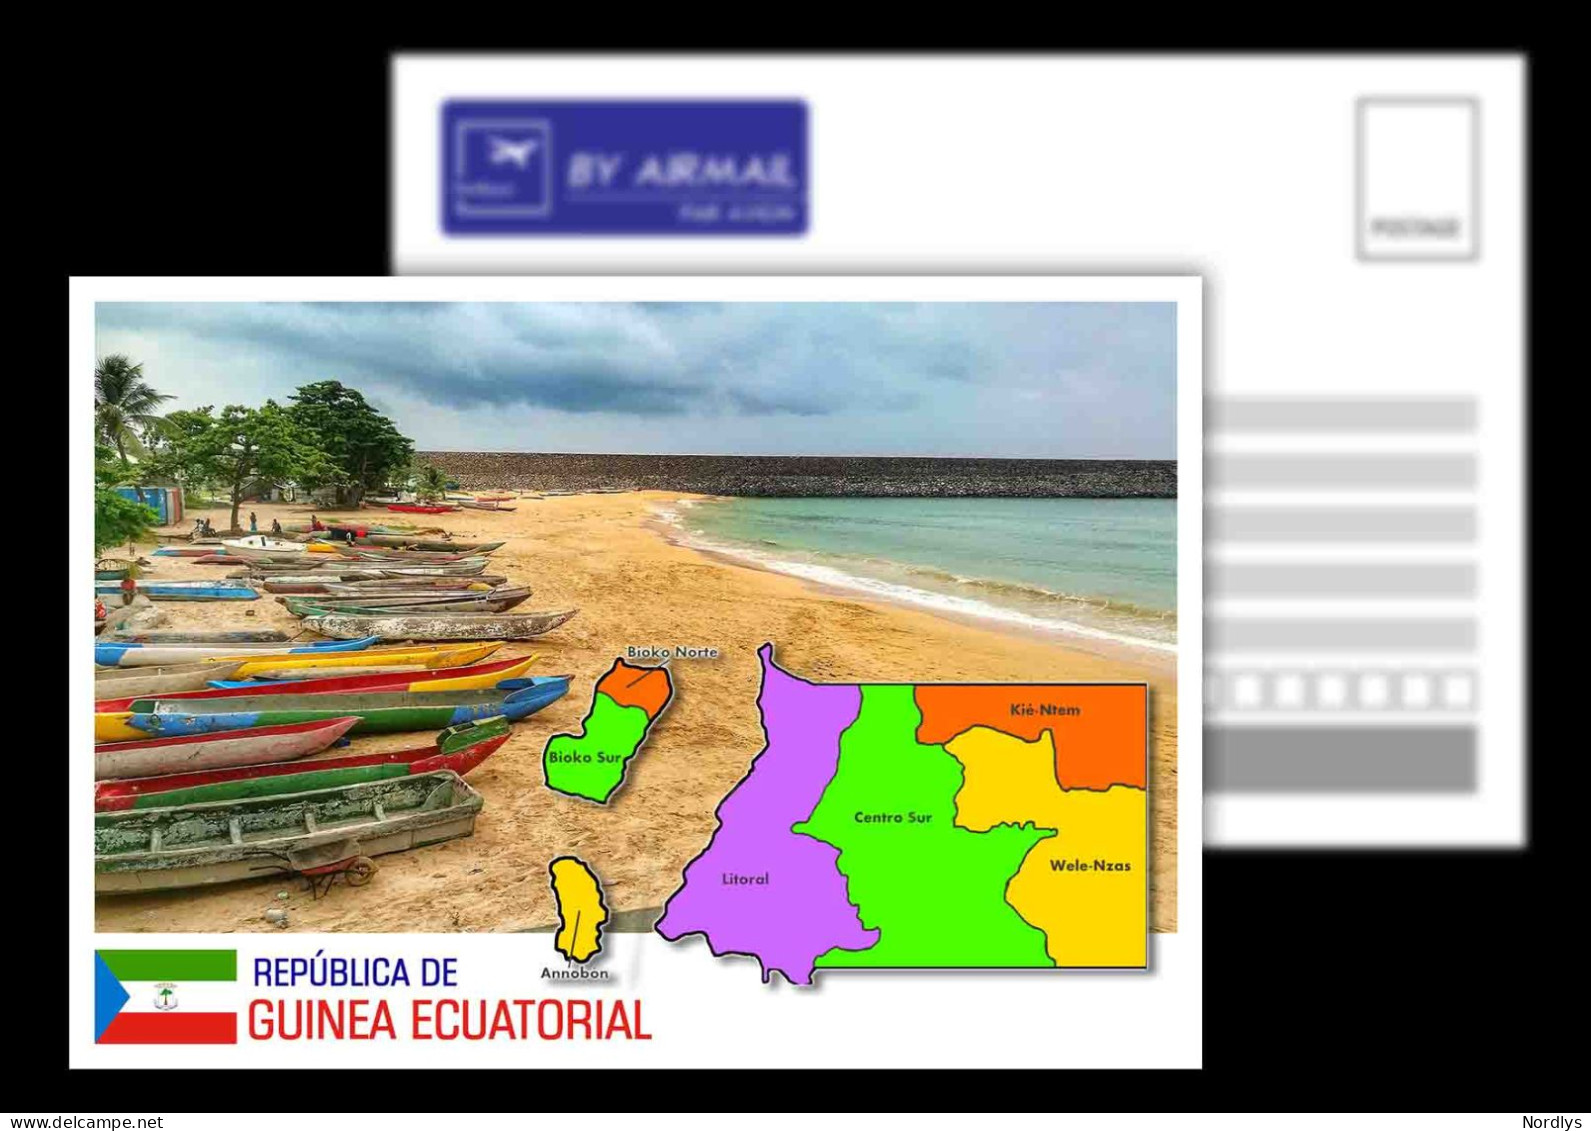 Equatorial Guinea / Postcard / View Card/ Map Card - Equatorial Guinea